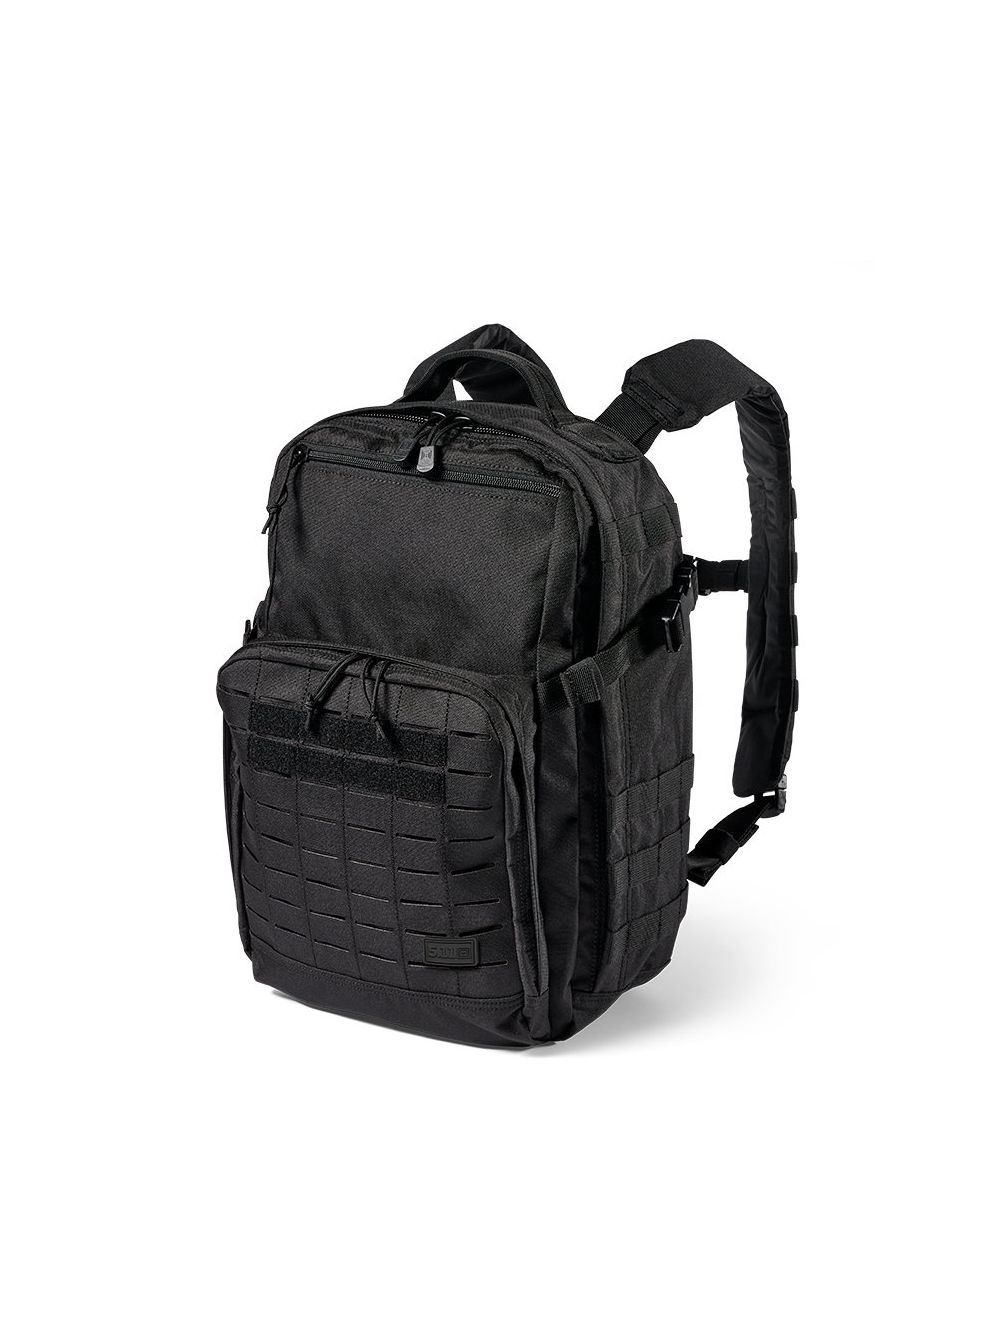 FAST-TAC 12 Backpack